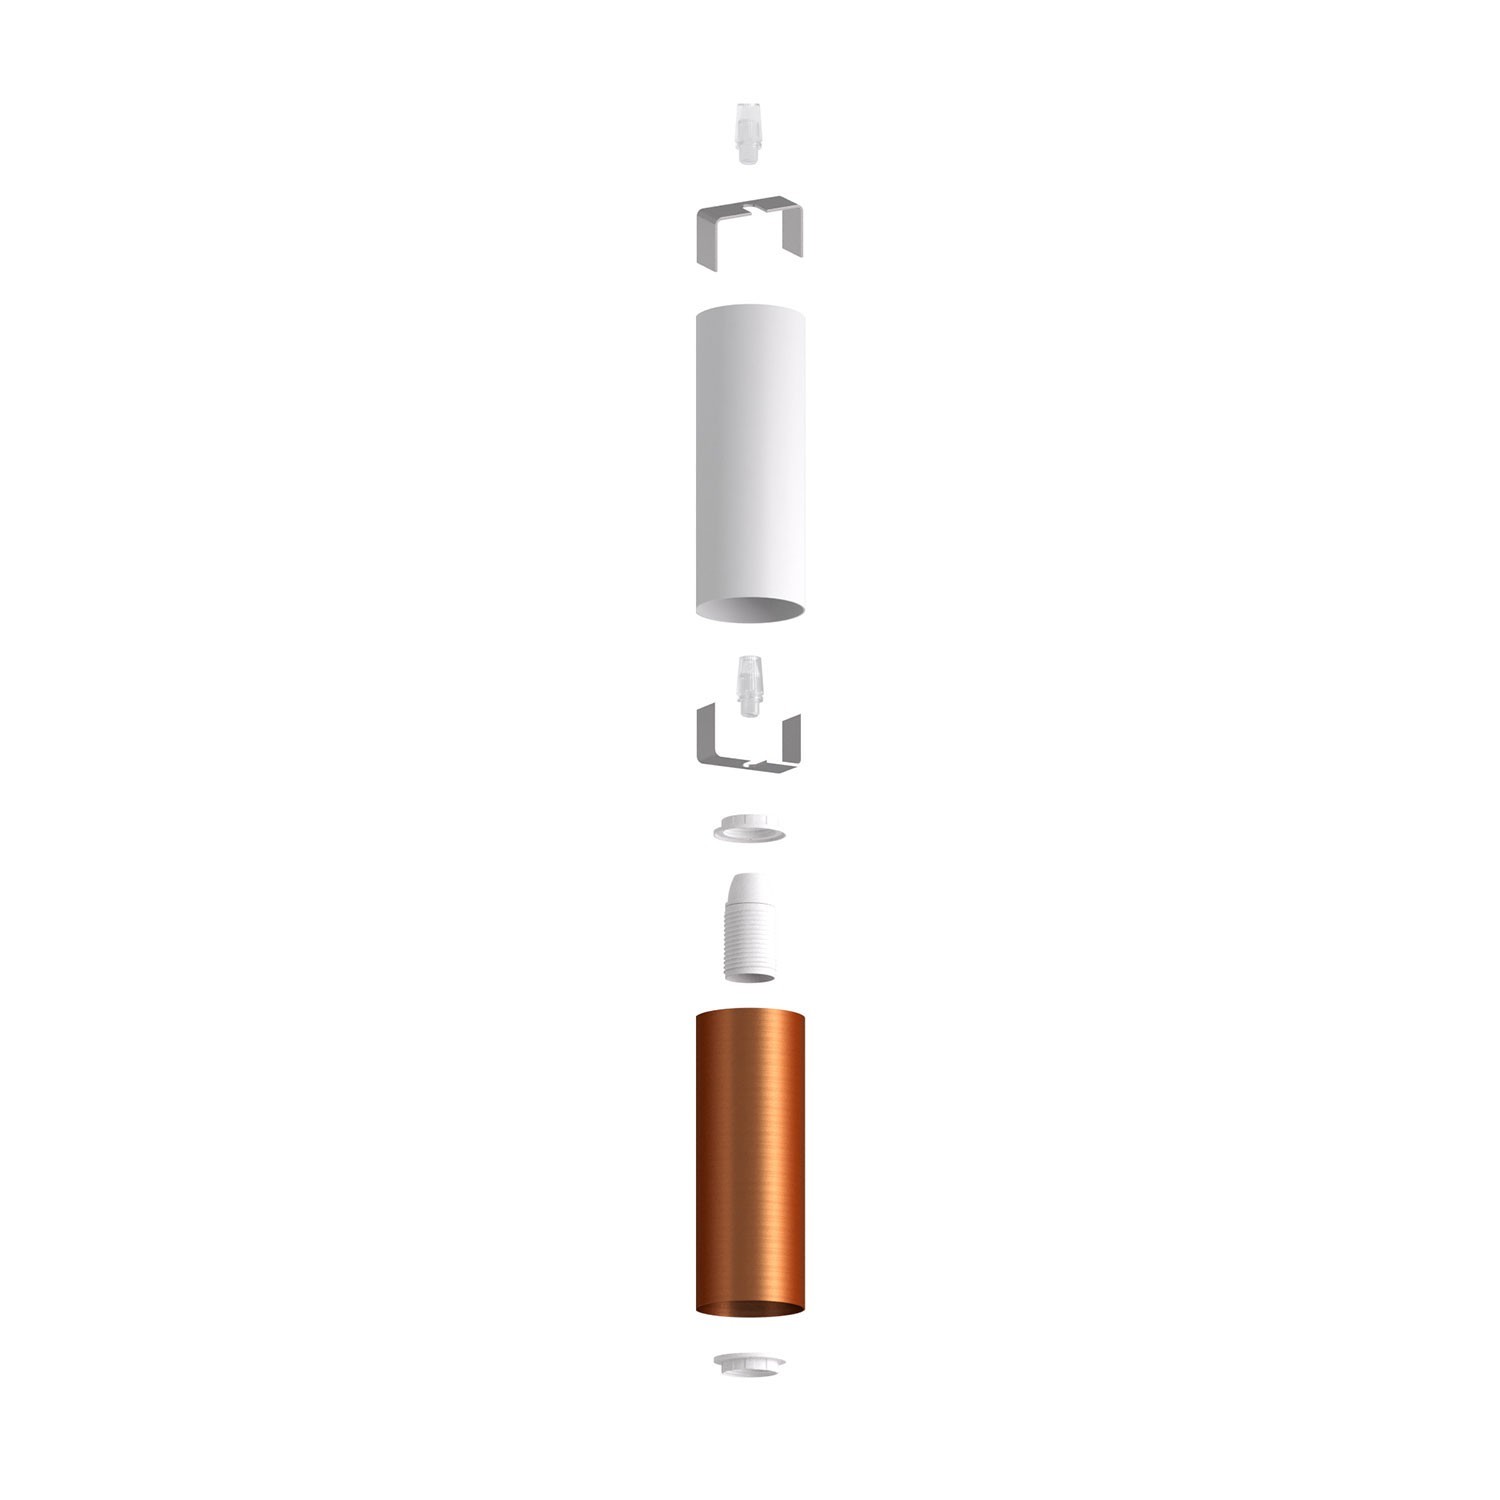 Tub-E14, tubo metálico doble para foco con portalámparas E14 de doble casquillo